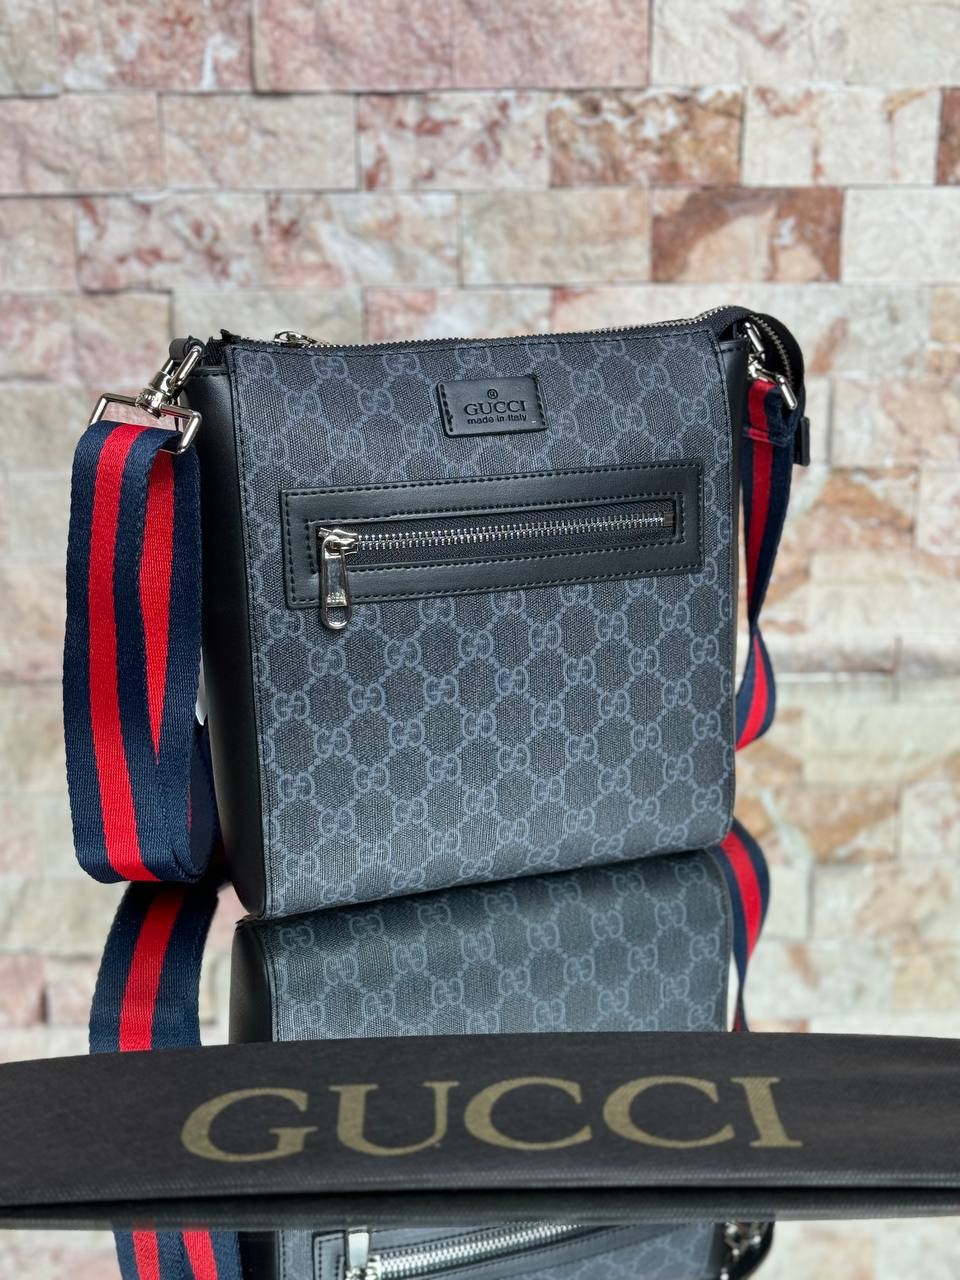 GG Luxury Messenger Bag